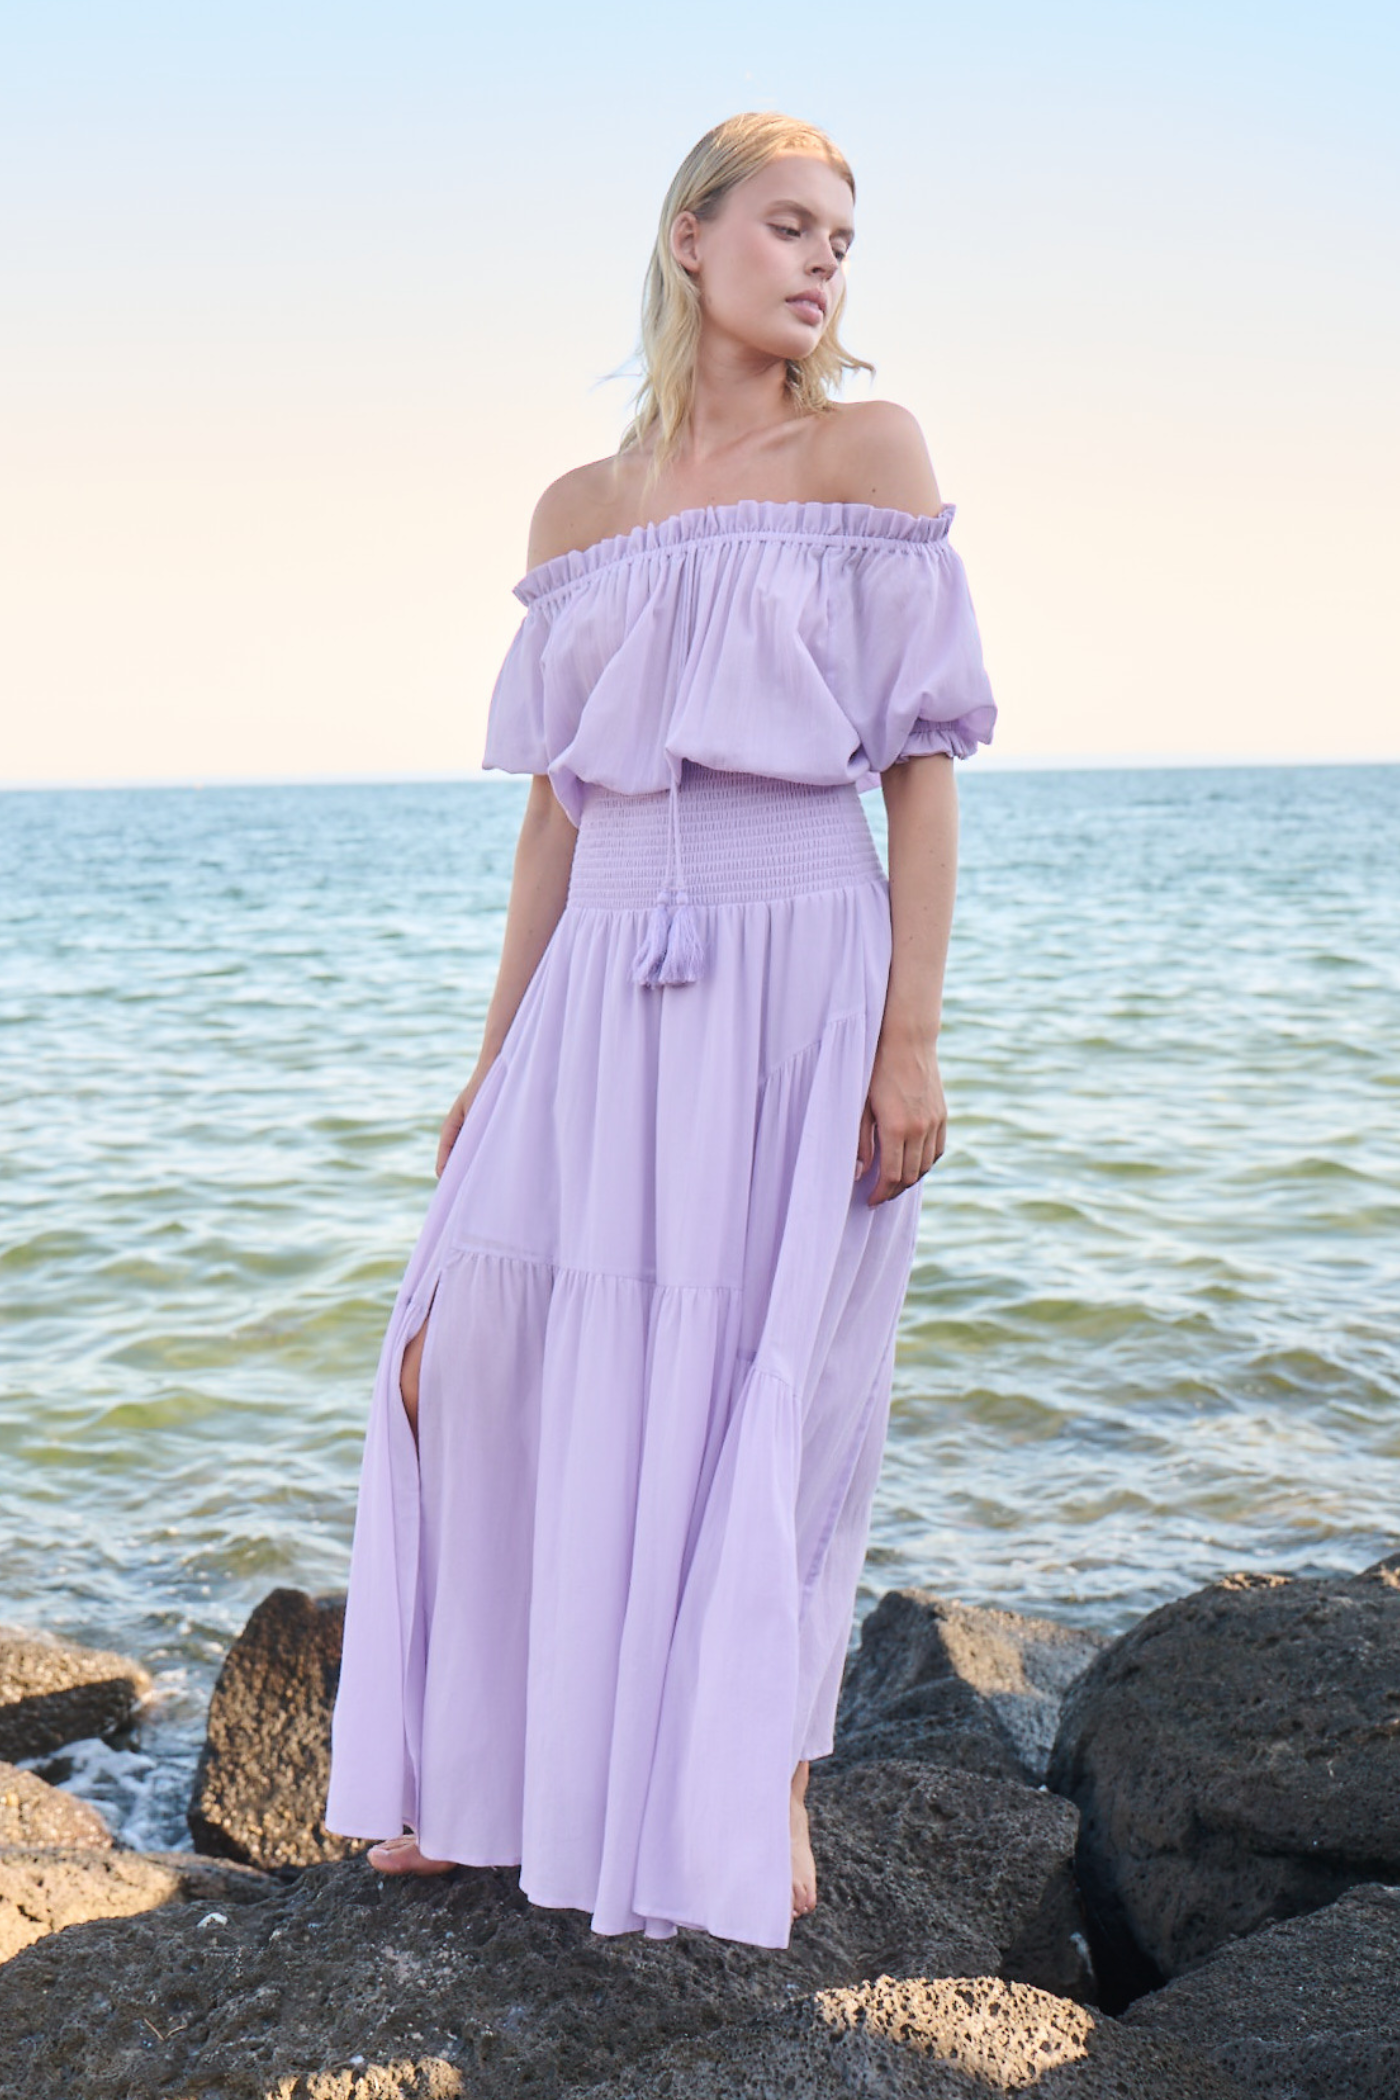 Model on rocks posing in long purple dress